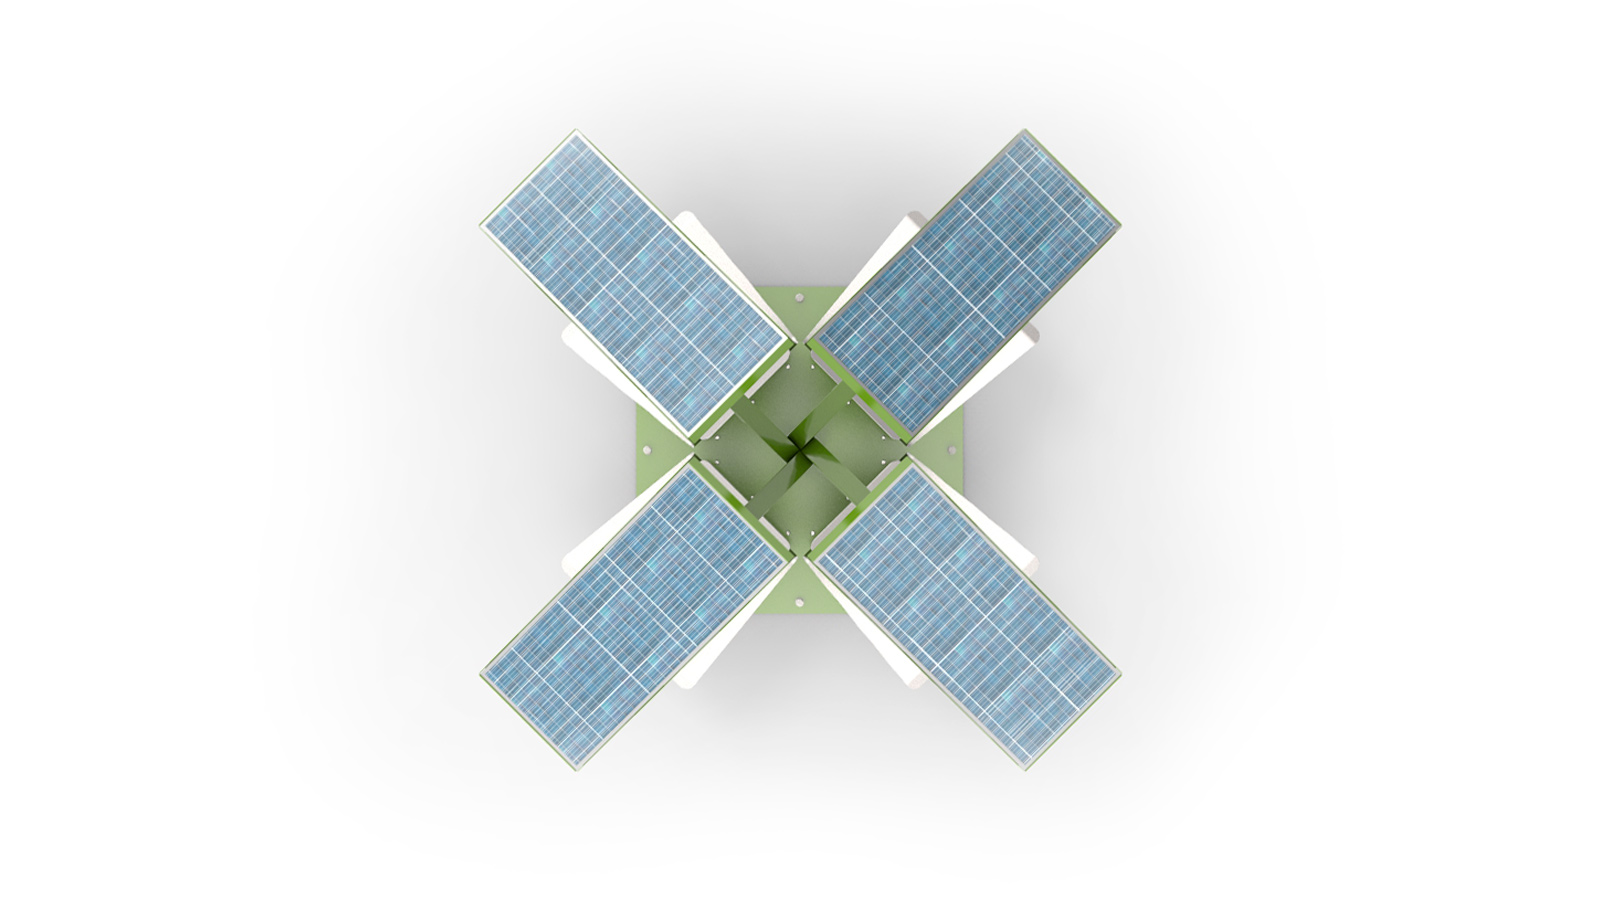 Estación de carga solar - usb